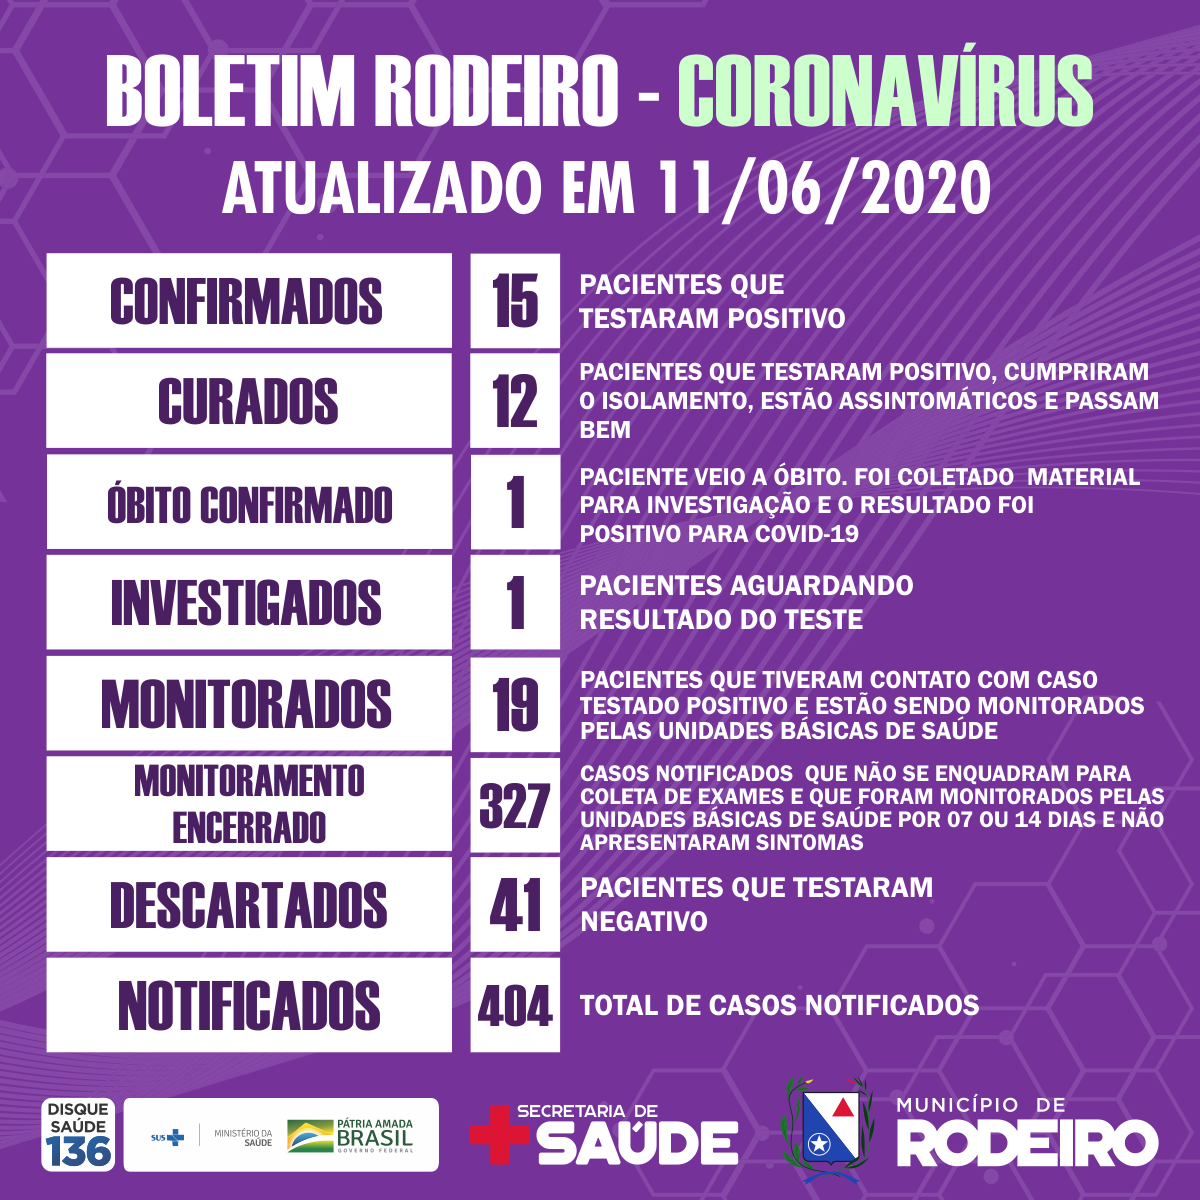 Boletim epidemiológico do Município de Rodeiro coronavírus, atualizado em 11/06/2020